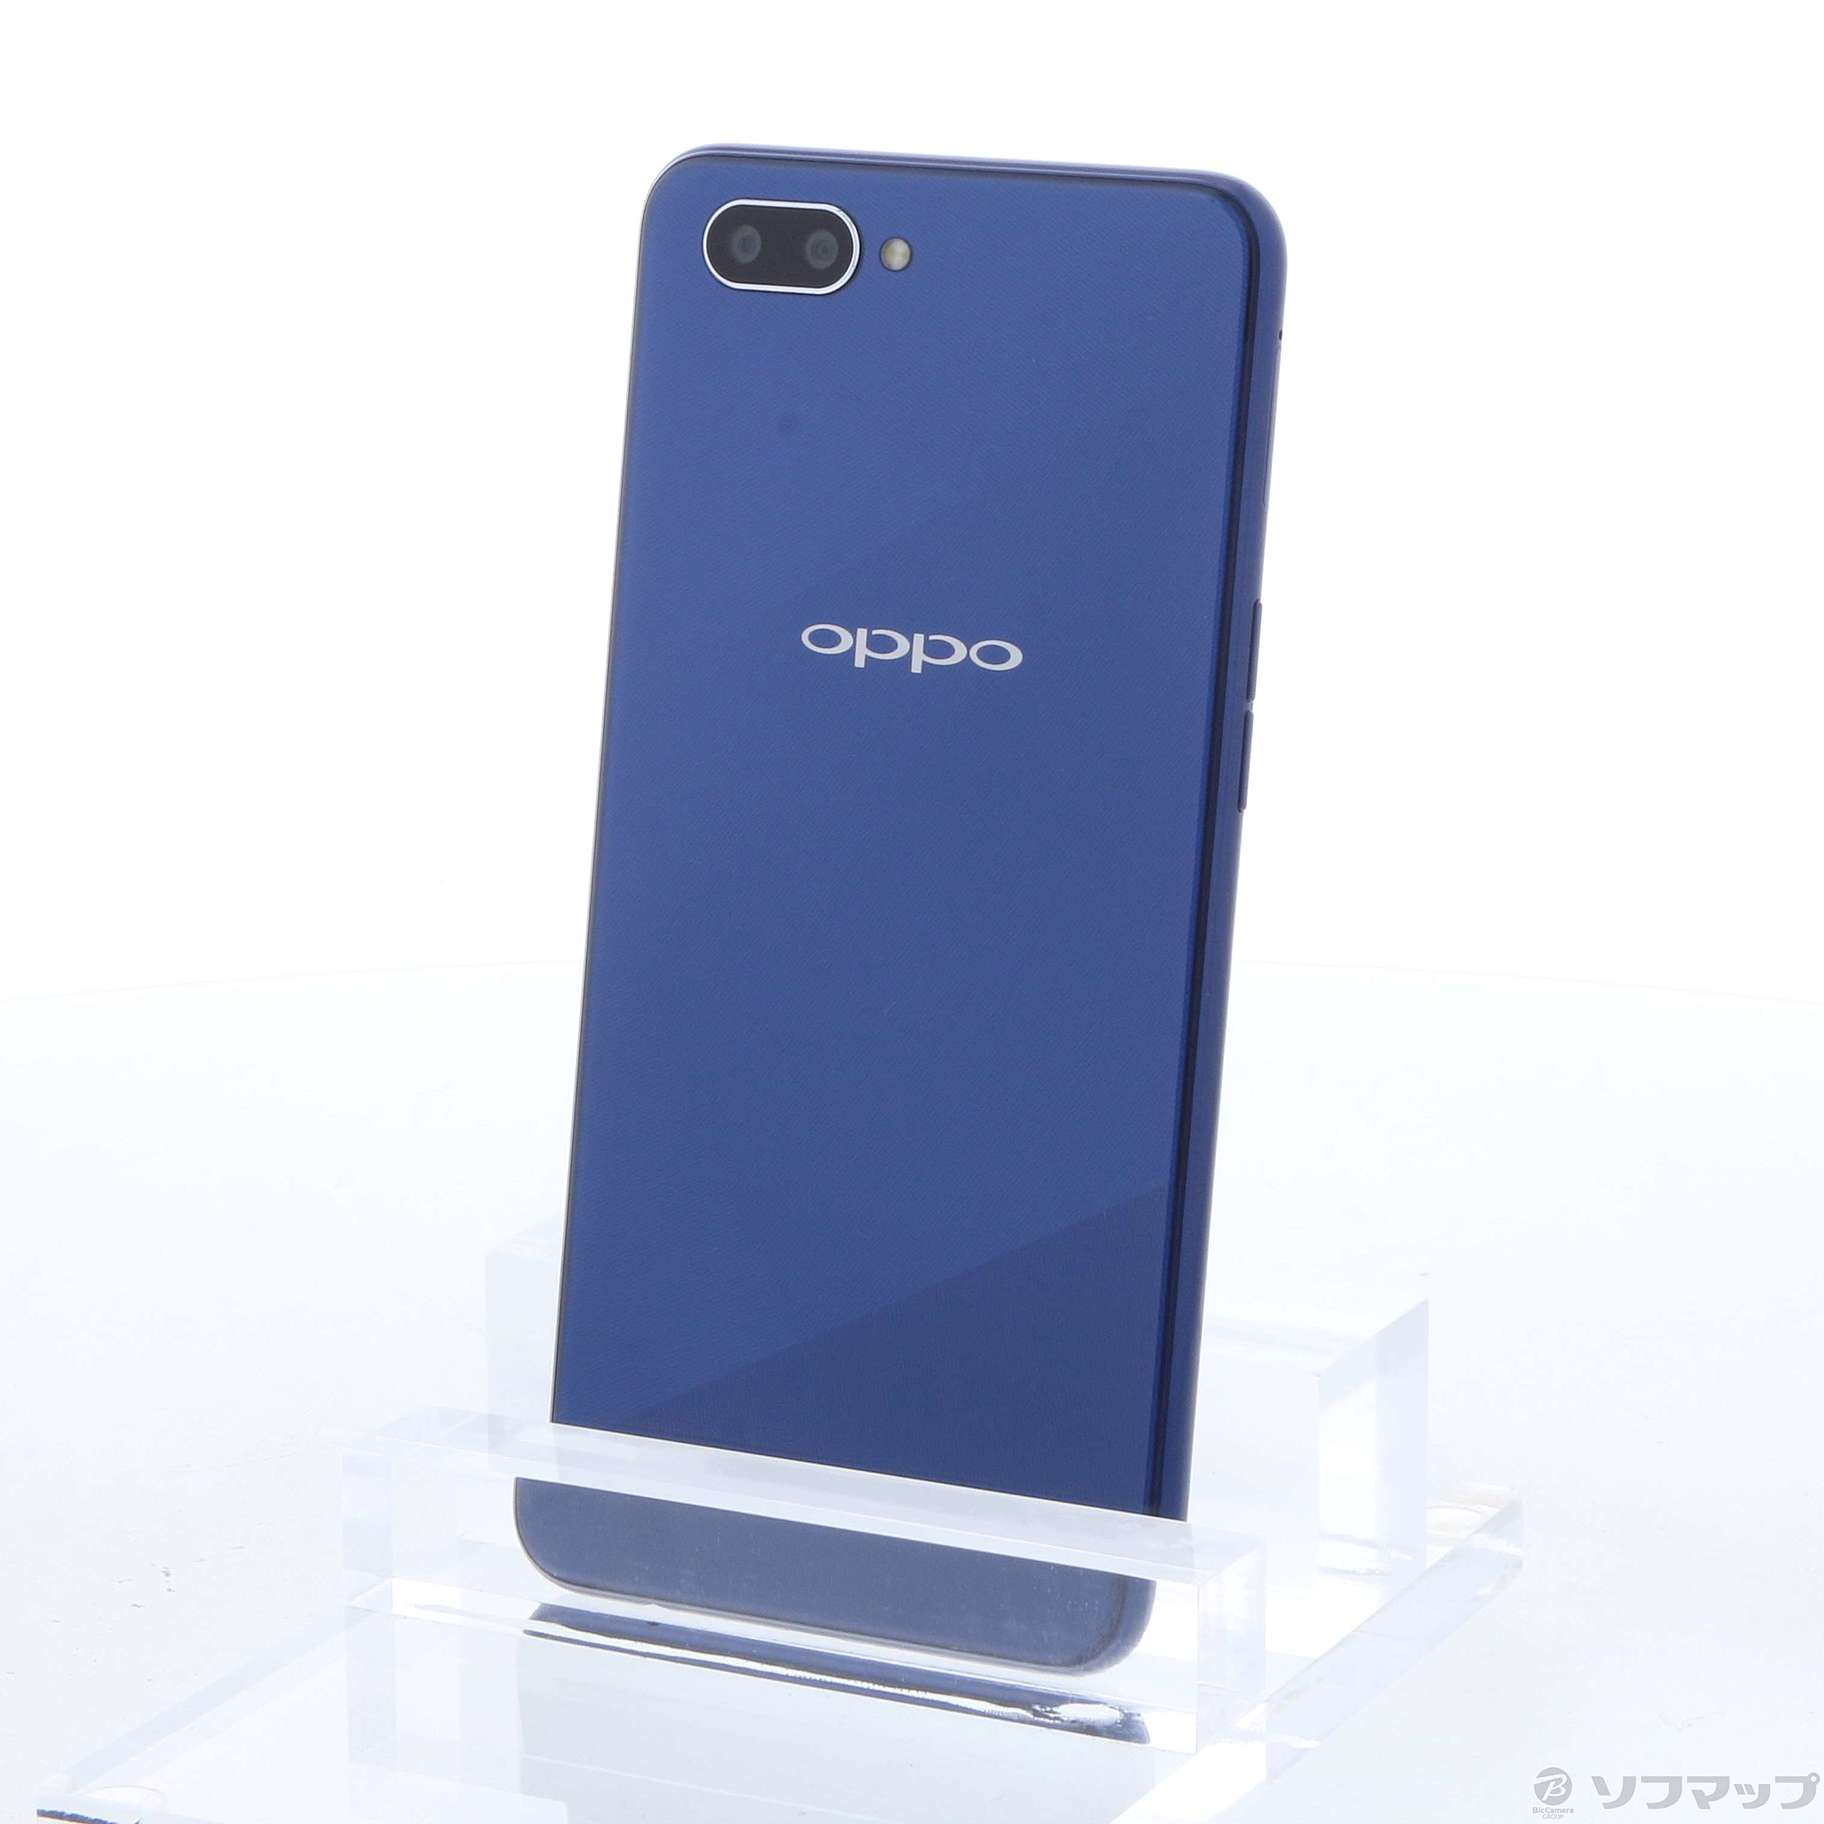 驚きの破格値 Oppo R15 Neo 3G blue 未開封新品の通販 by